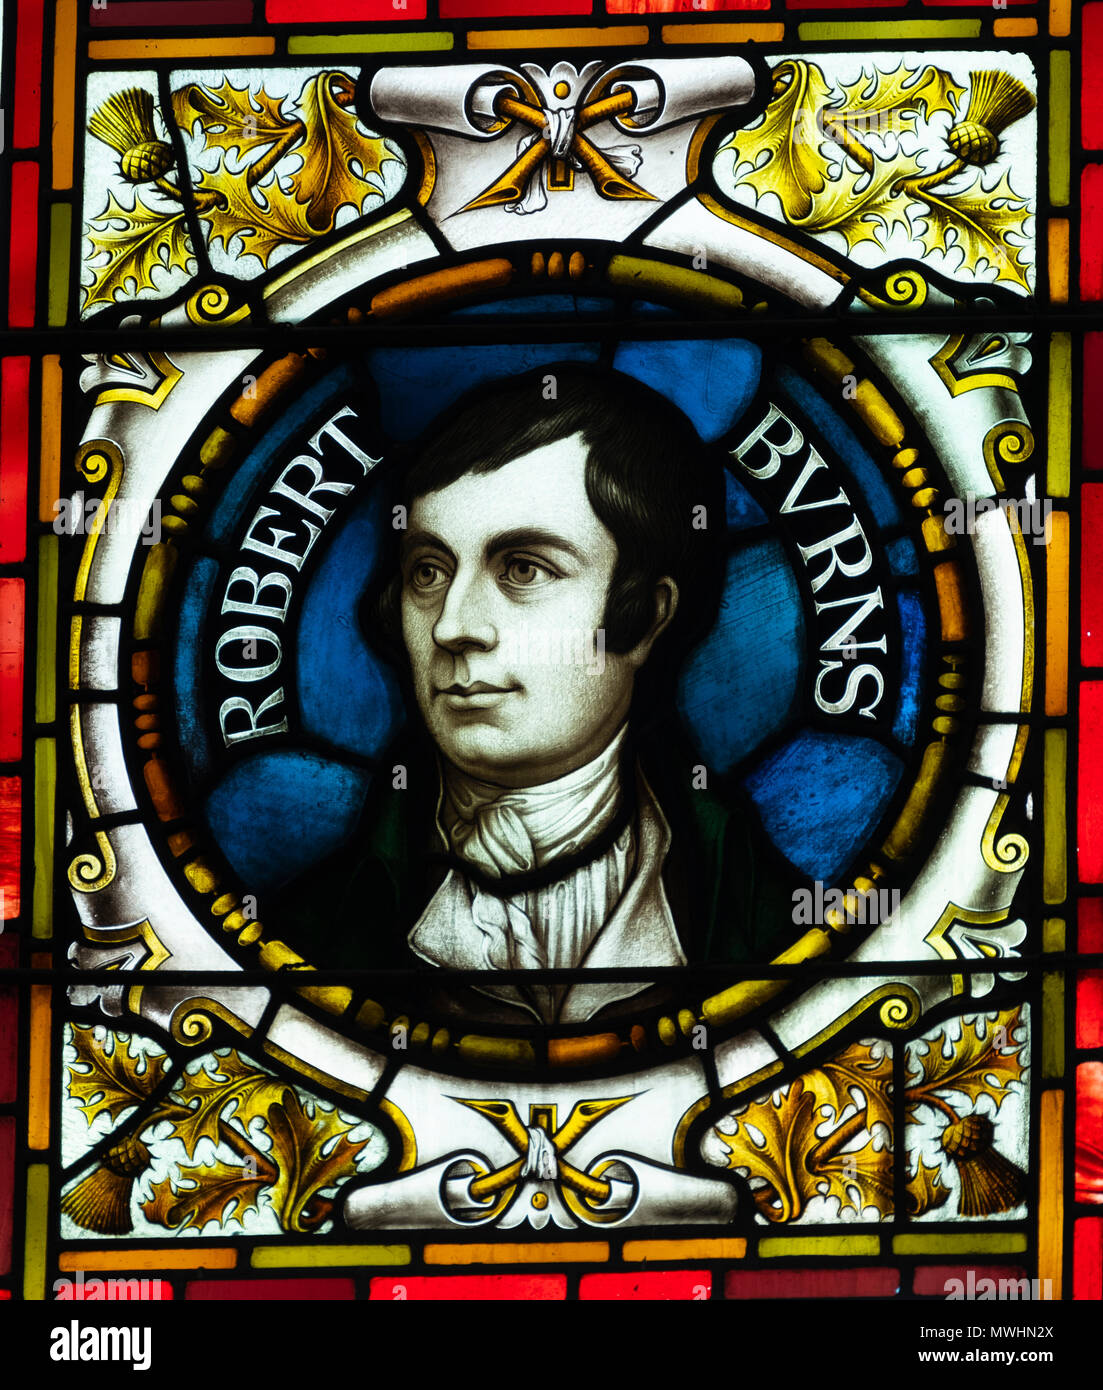 Vitrail montrant Robert Burns à l'McManus art gallery and museum à Dundee, Écosse, Royaume-Uni, Tayside Banque D'Images